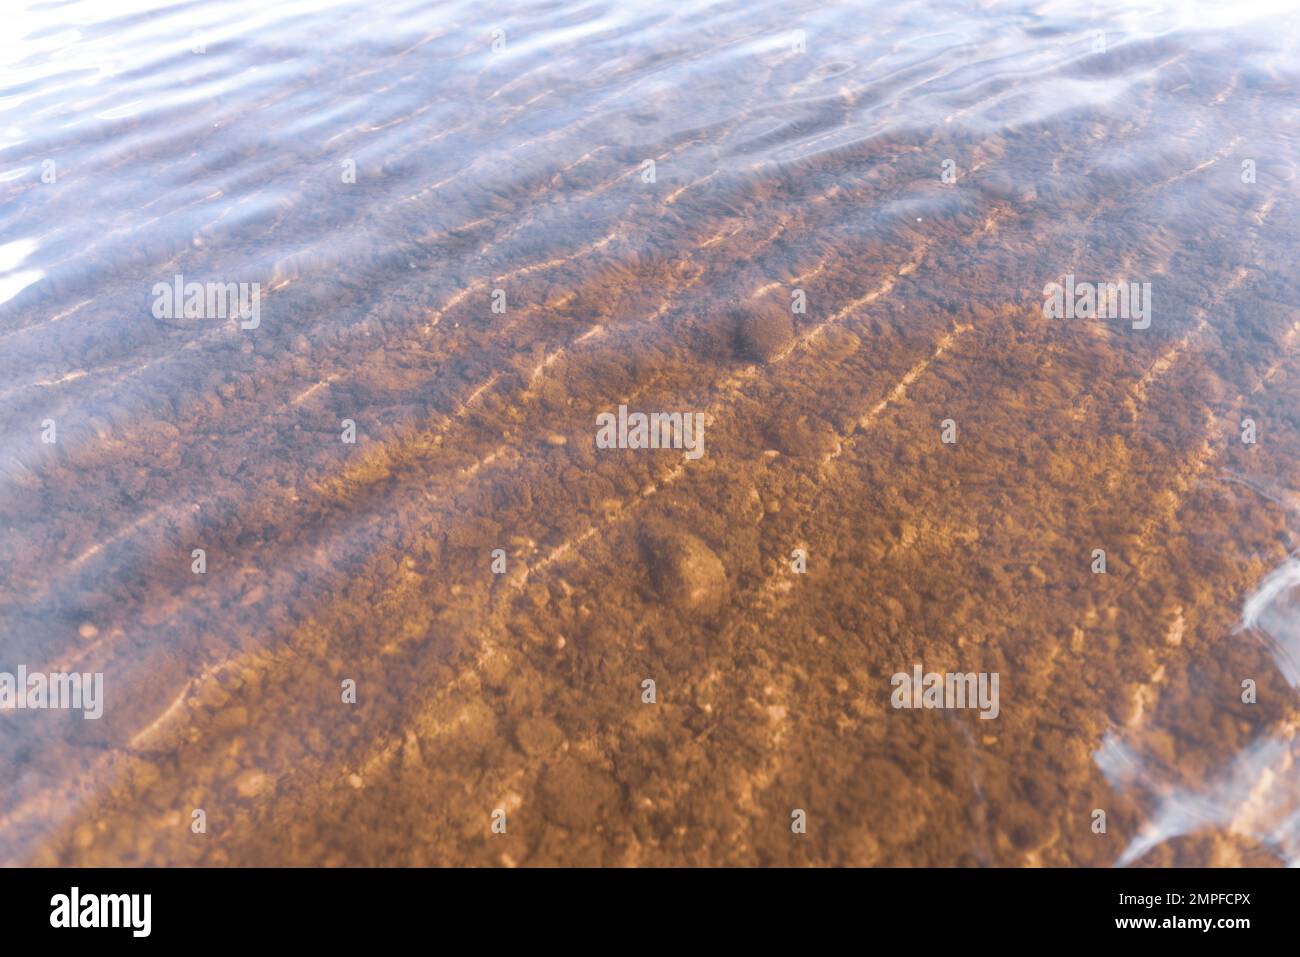 Der Grund des Flusses durch transparentes Wasser mit Lichtreflexion und Wellenbewegung. Natürliche Textur, Hintergrund. Stockfoto